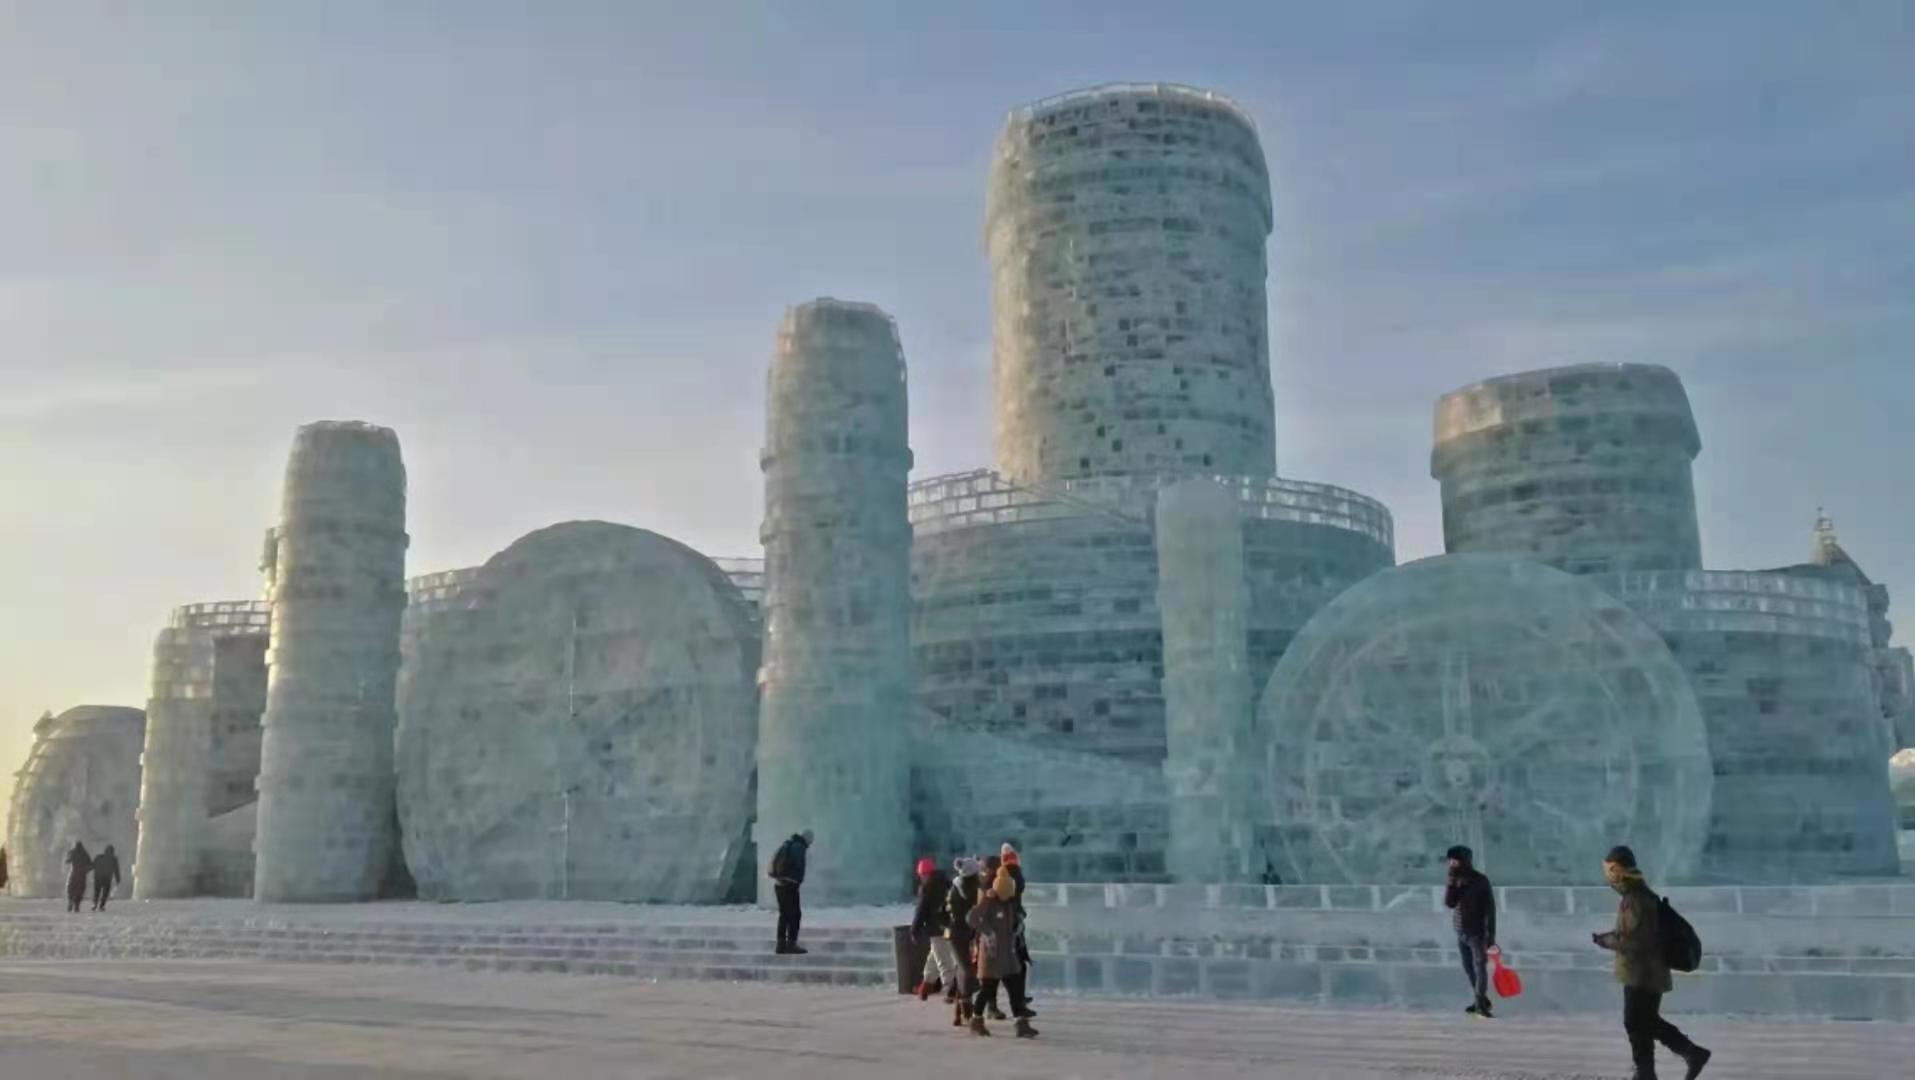 哈尔滨,一定要去看次冰雪大世界,视觉效果非常震撼!